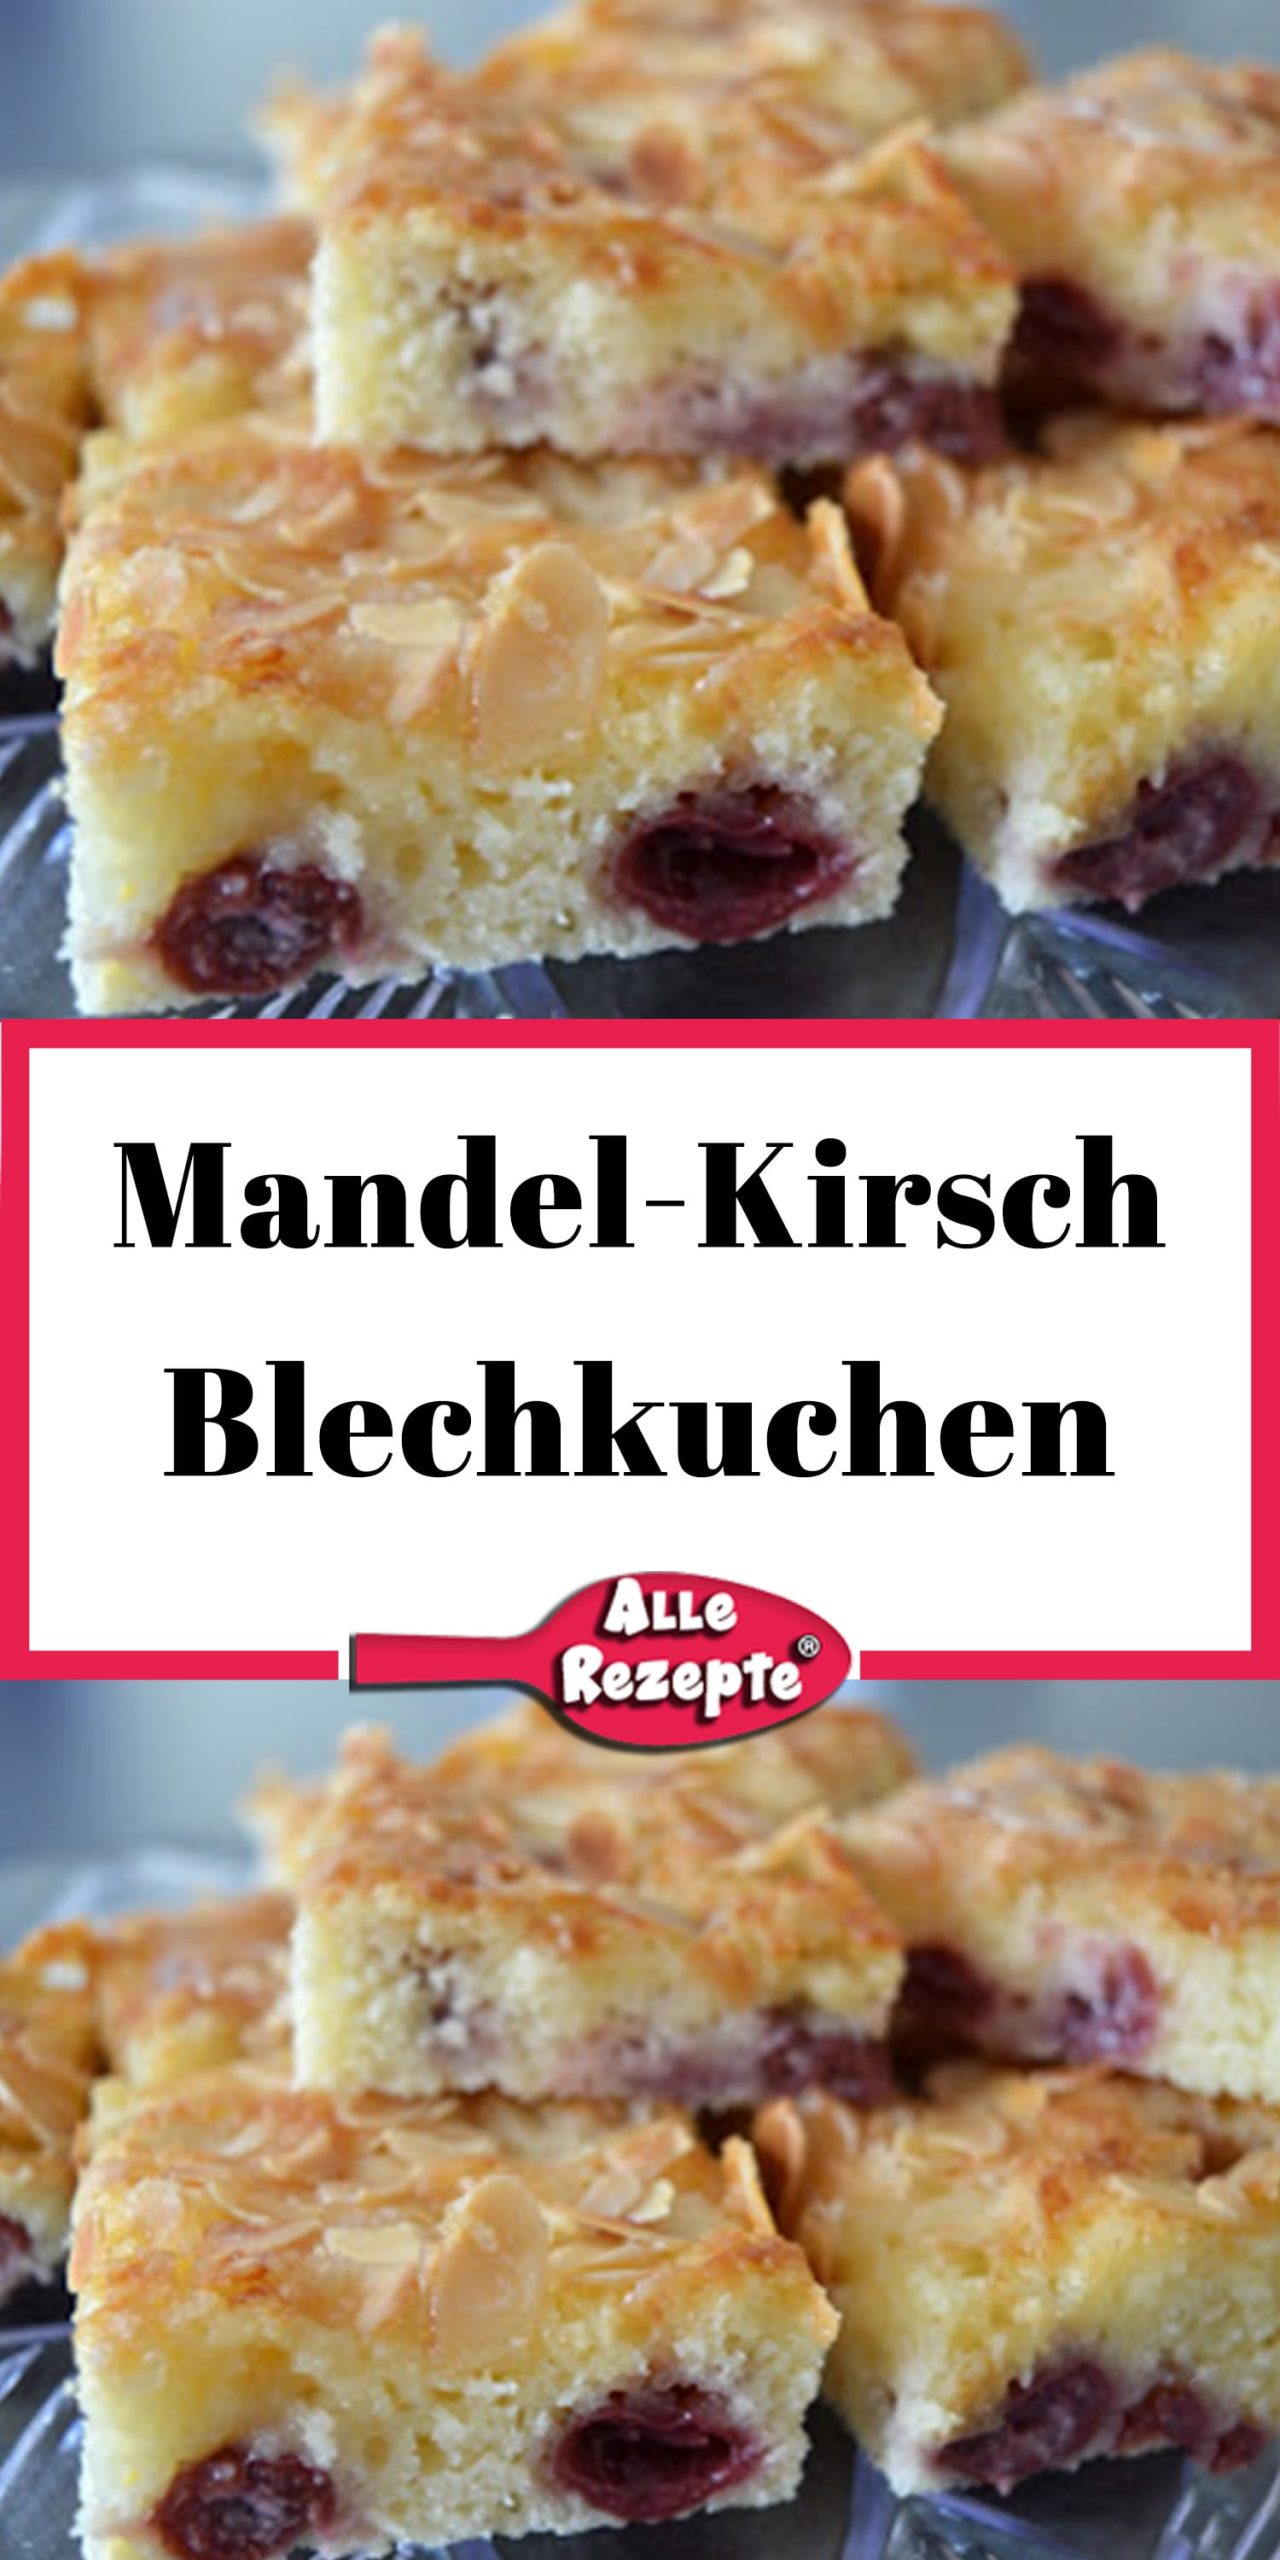 Mandel-Kirsch Blechkuchen - Alle Rezepte